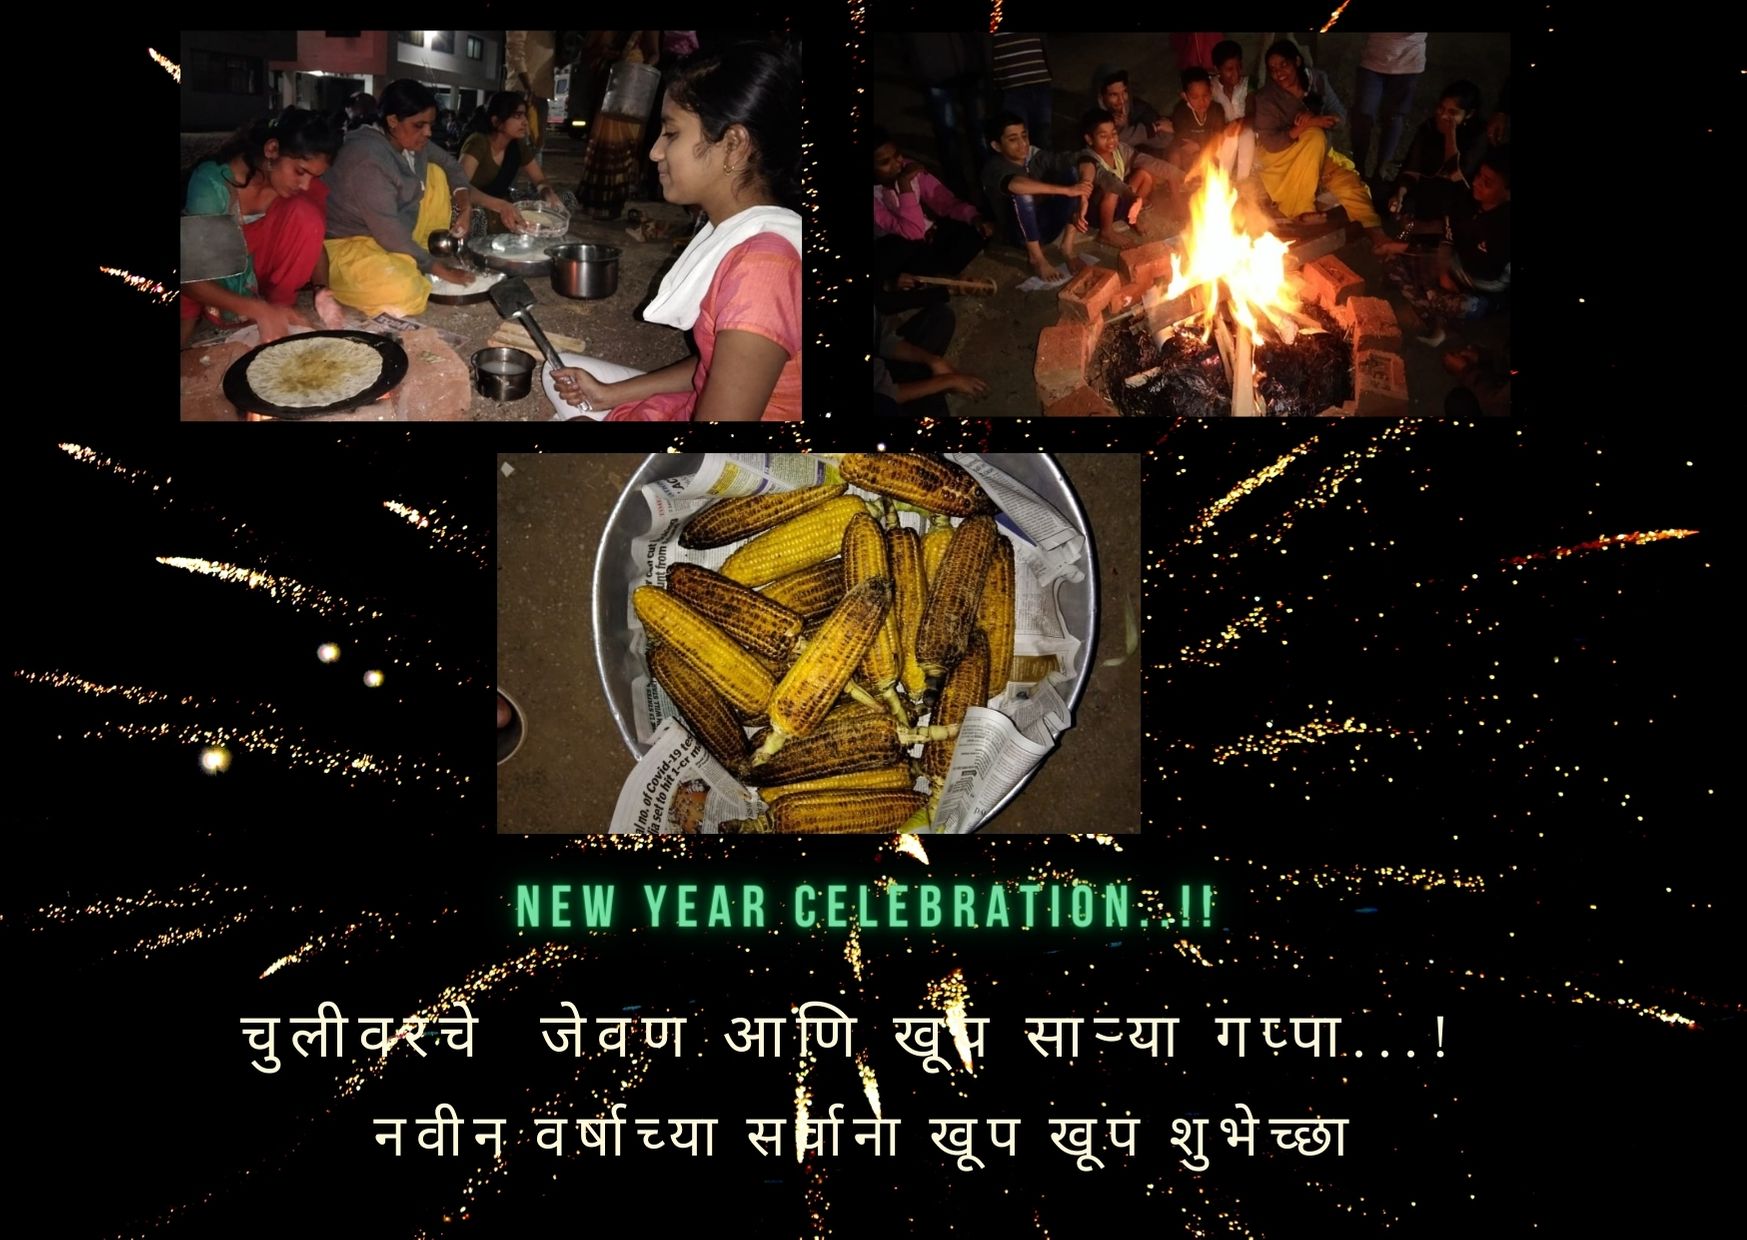 New Year Celebration